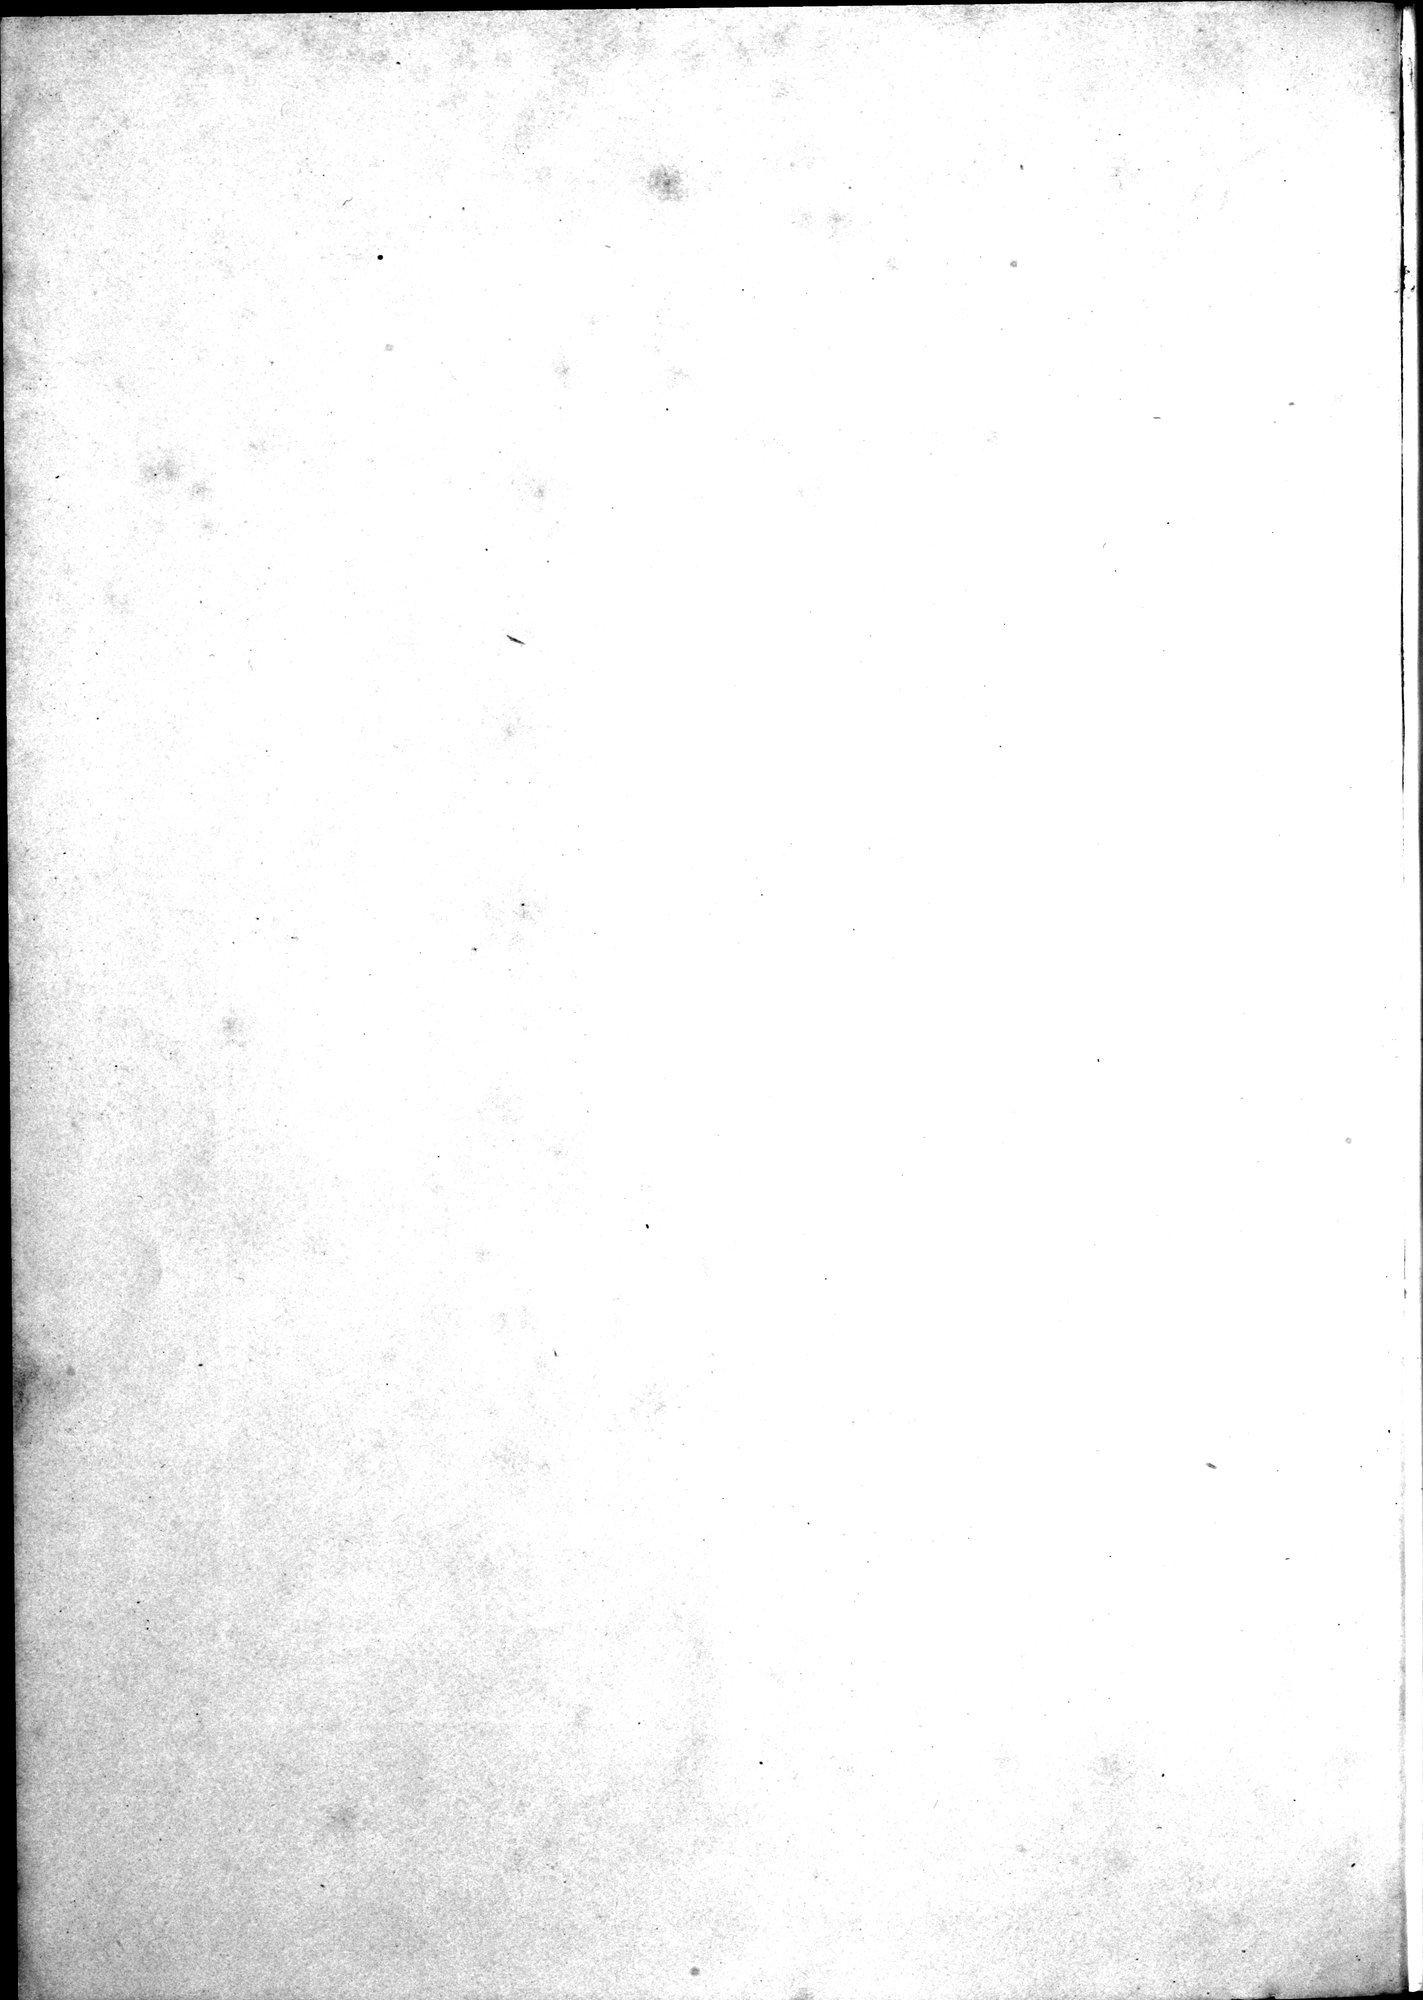 Kunstgeschichte der Seidenweberei : vol.2 / Page 6 (Grayscale High Resolution Image)